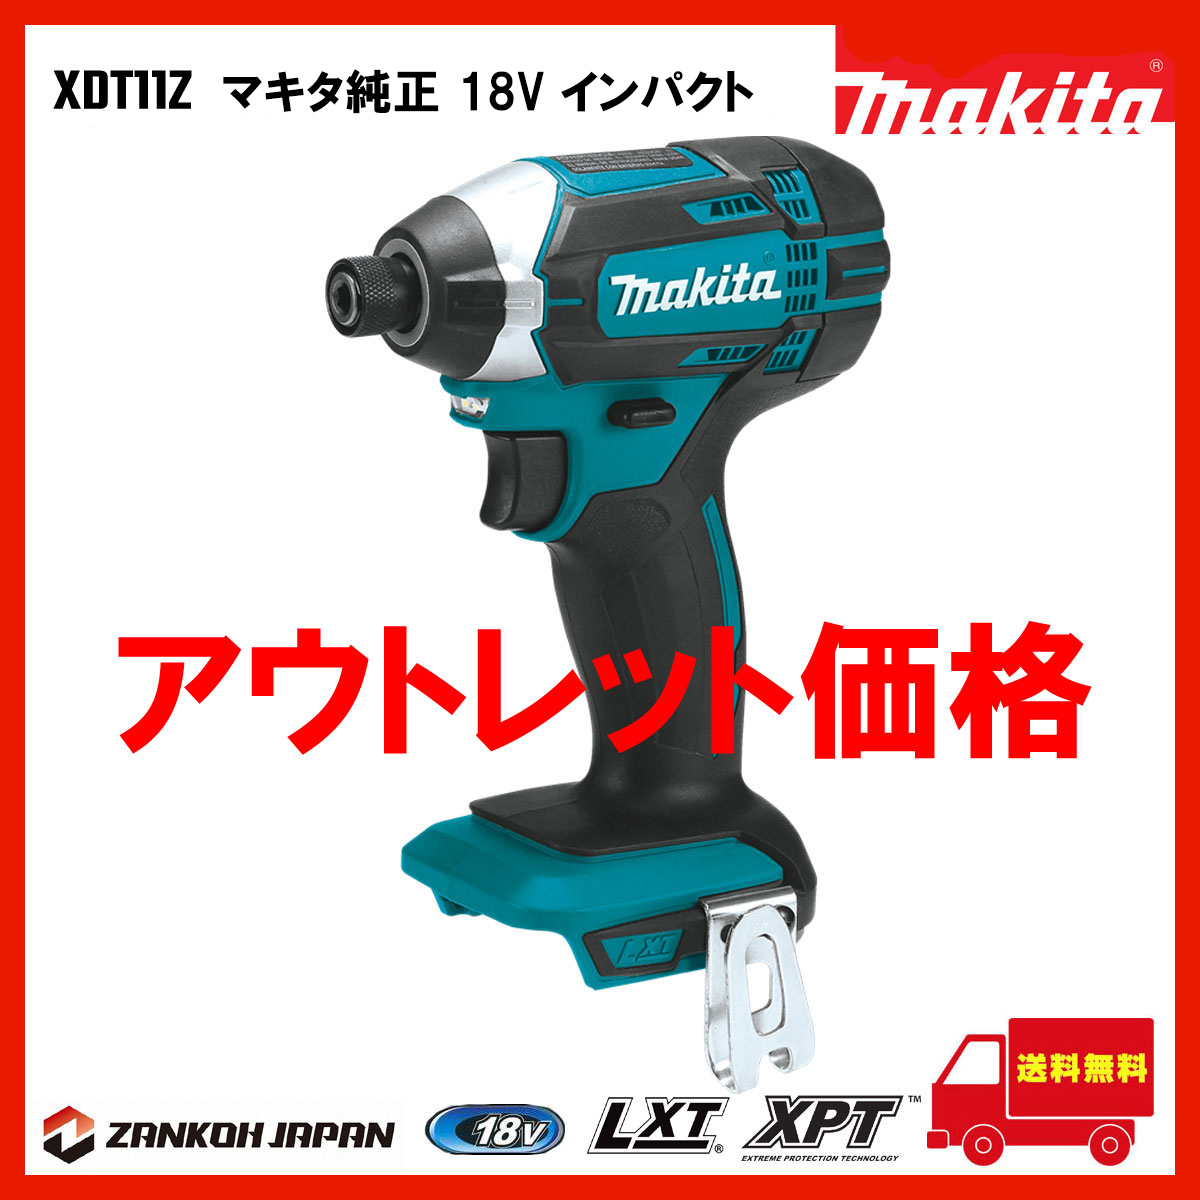 インパクトドライバー マキタ 18V 充電式 MAKITA XDT11Z 青 純正品 本体のみ f